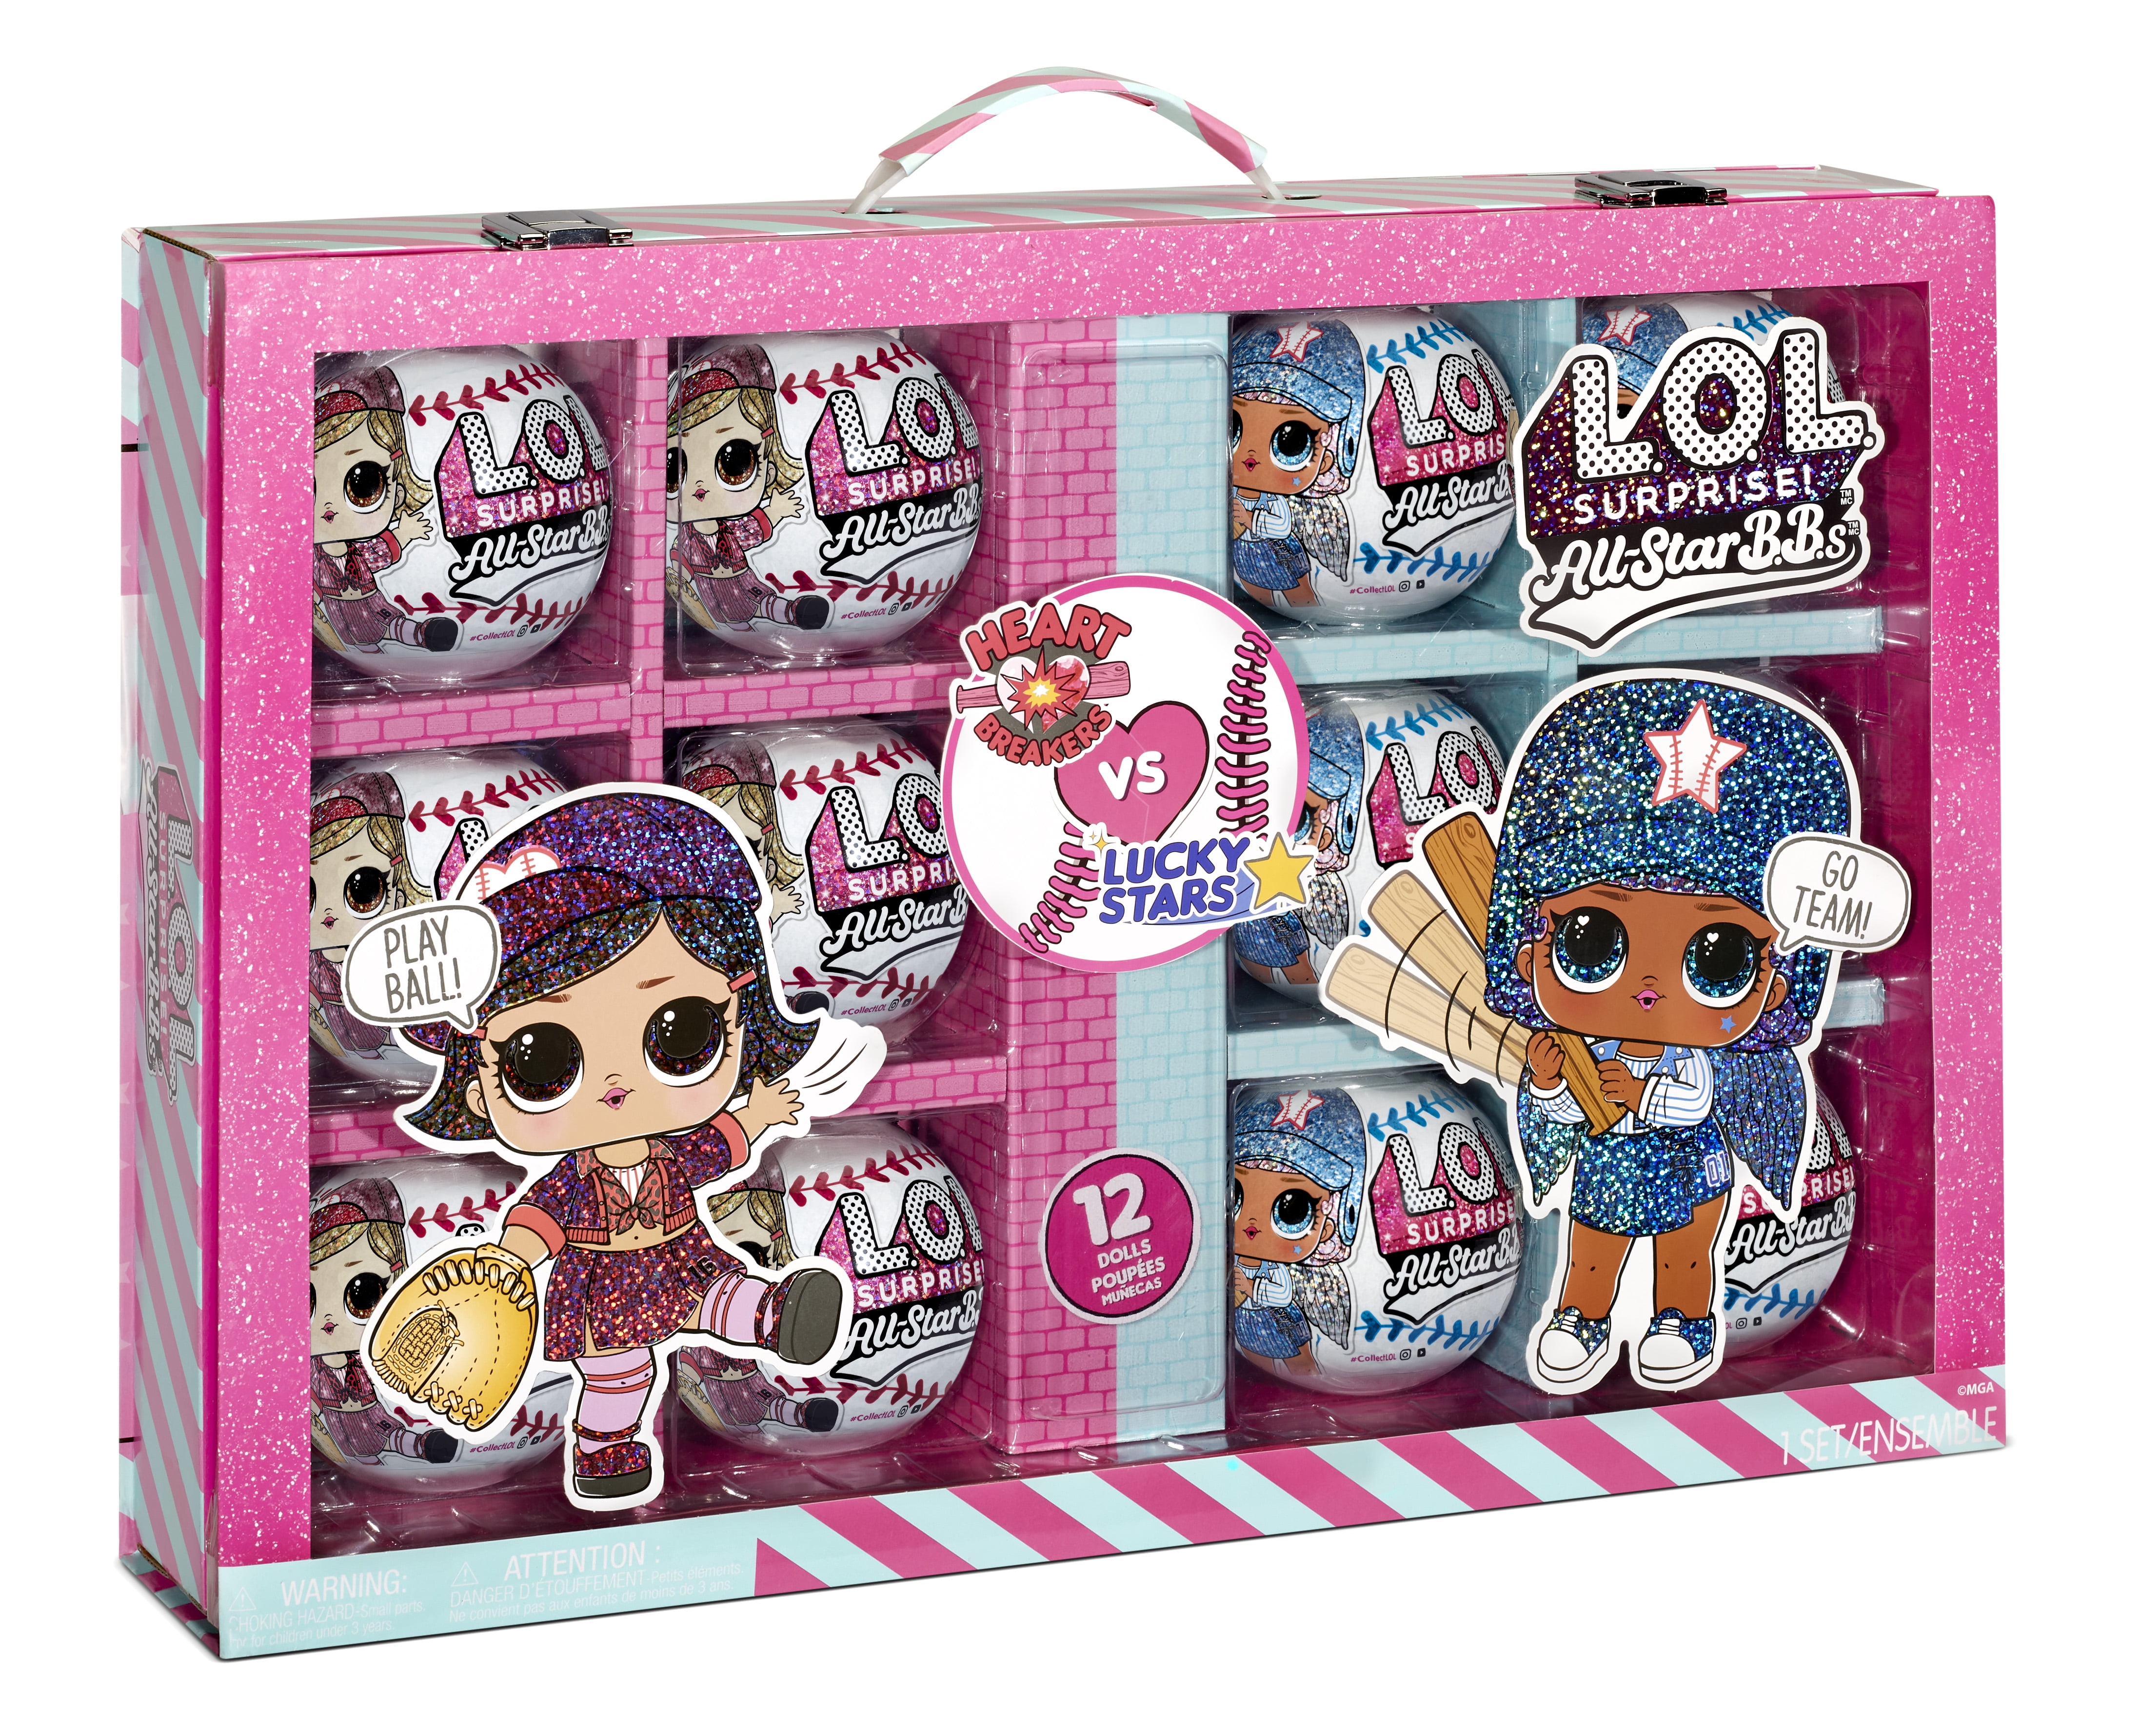 L.O.L Surprise All-Star B.B.s Sports Series 1 Baseball Sparkly Dolls